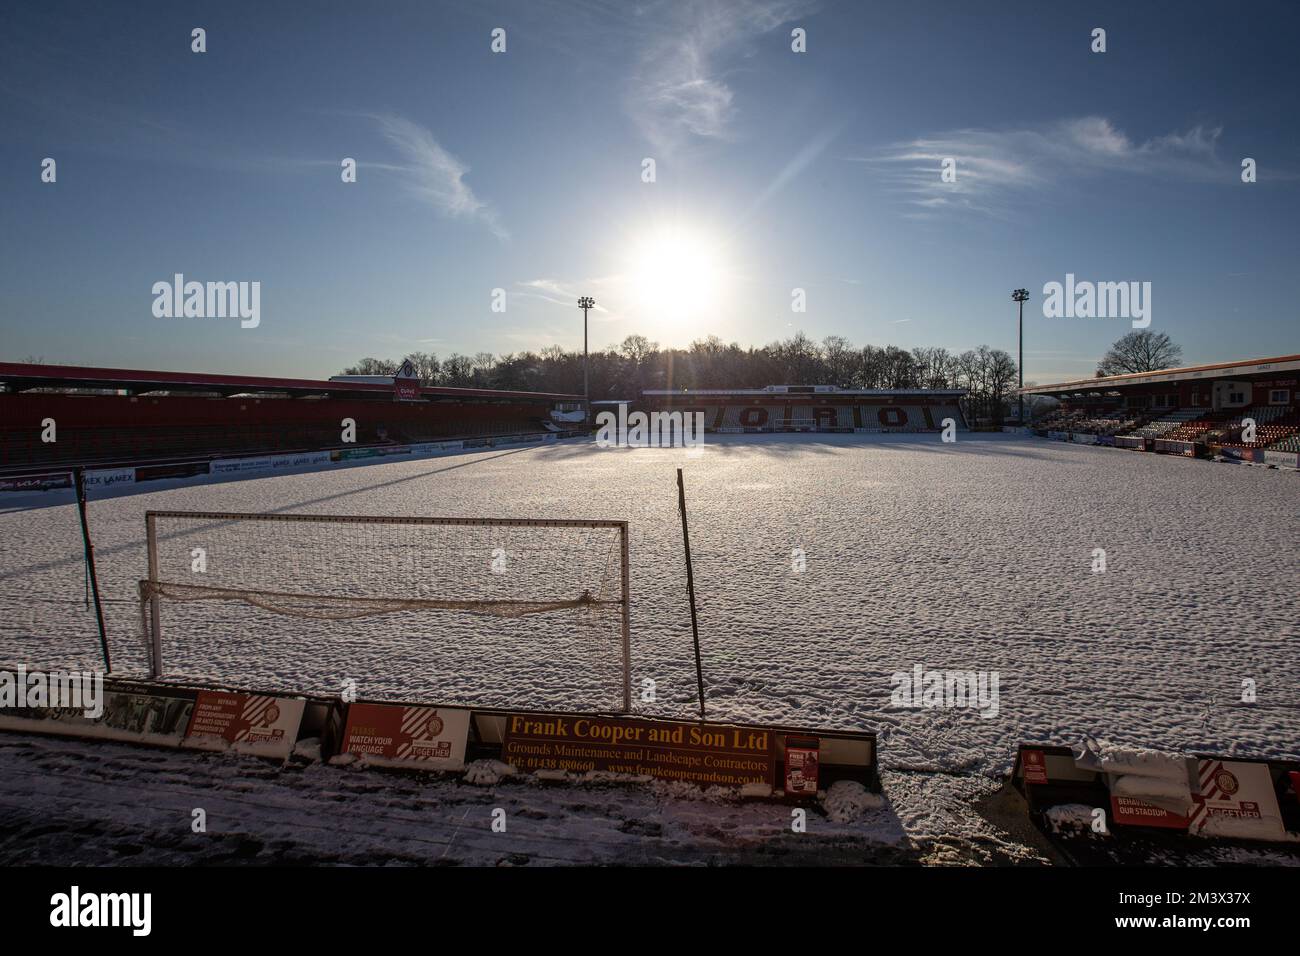 Schneebedeckter Fußball-/Fußballplatz in Winterszene auf englischem Fußballplatz. Lamex Stadium, Stevenage FC, Stockfoto